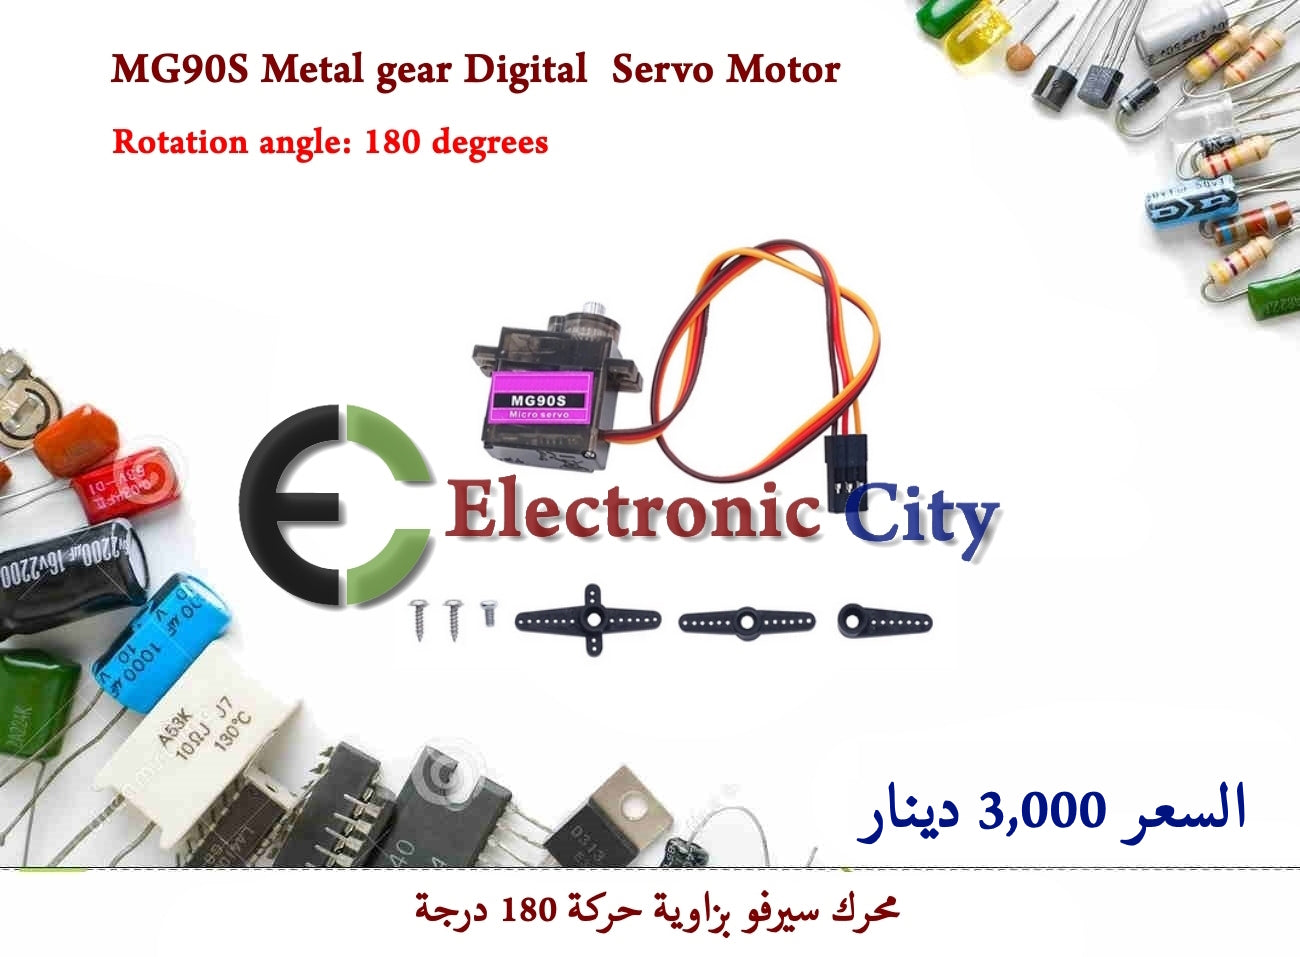 MG90S Metal gear Digital Servo Motor #S4 011102